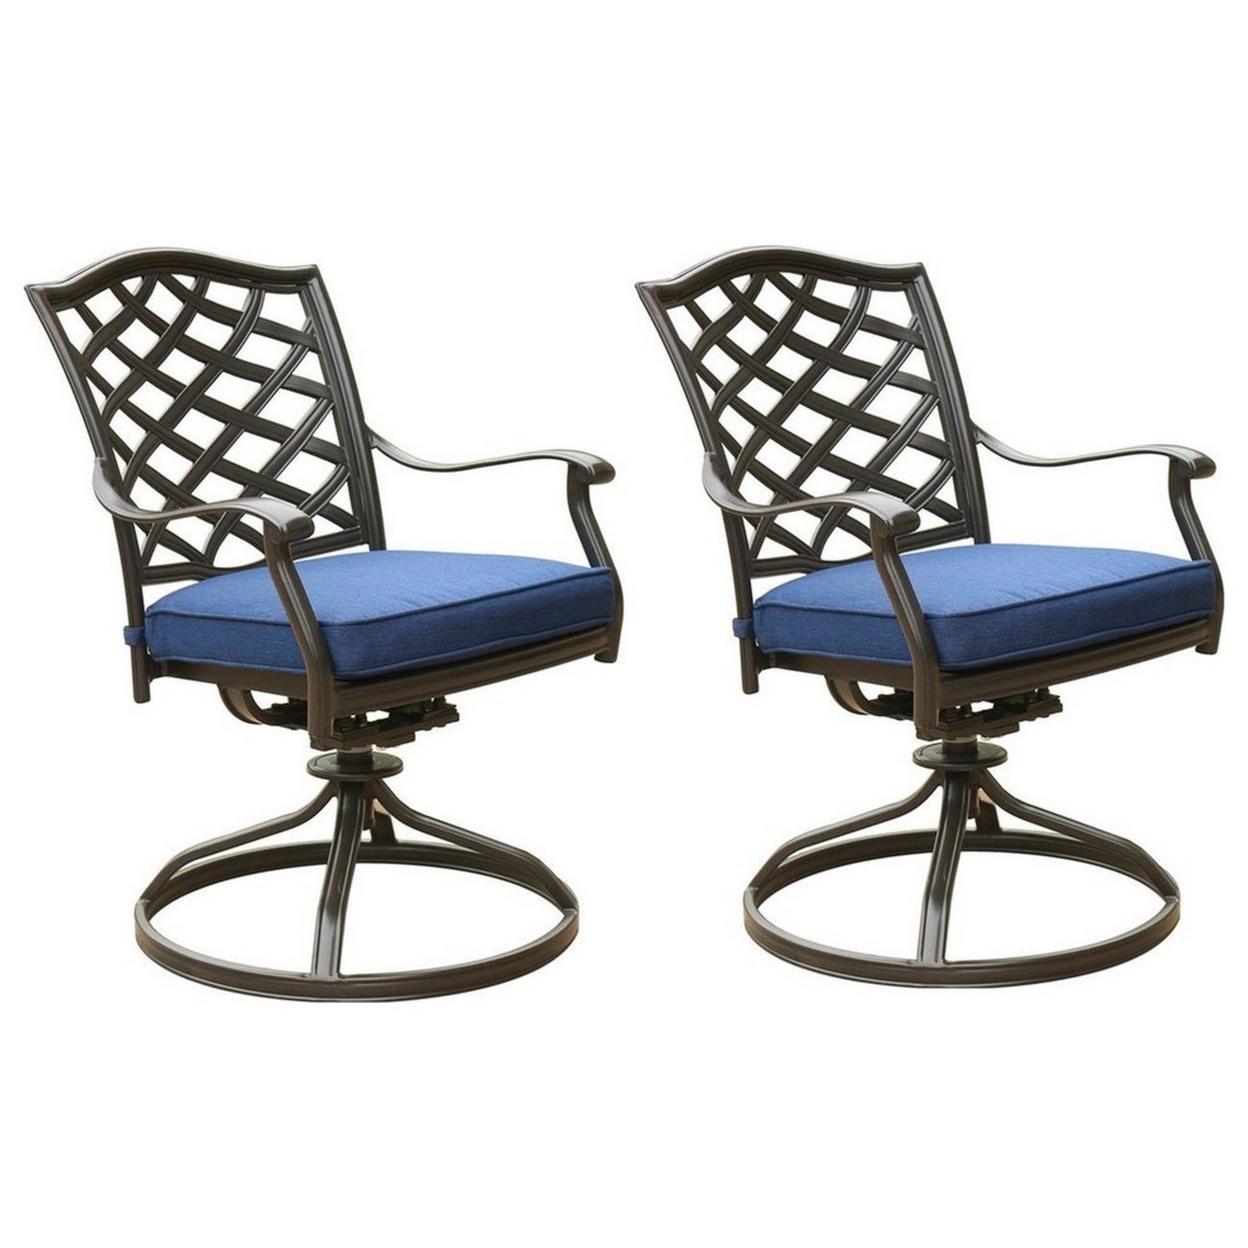 Wynn 25 Inch Modern Patio Dining Swivel Chair With Cushion, Set Of 2, Blue- Saltoro Sherpi